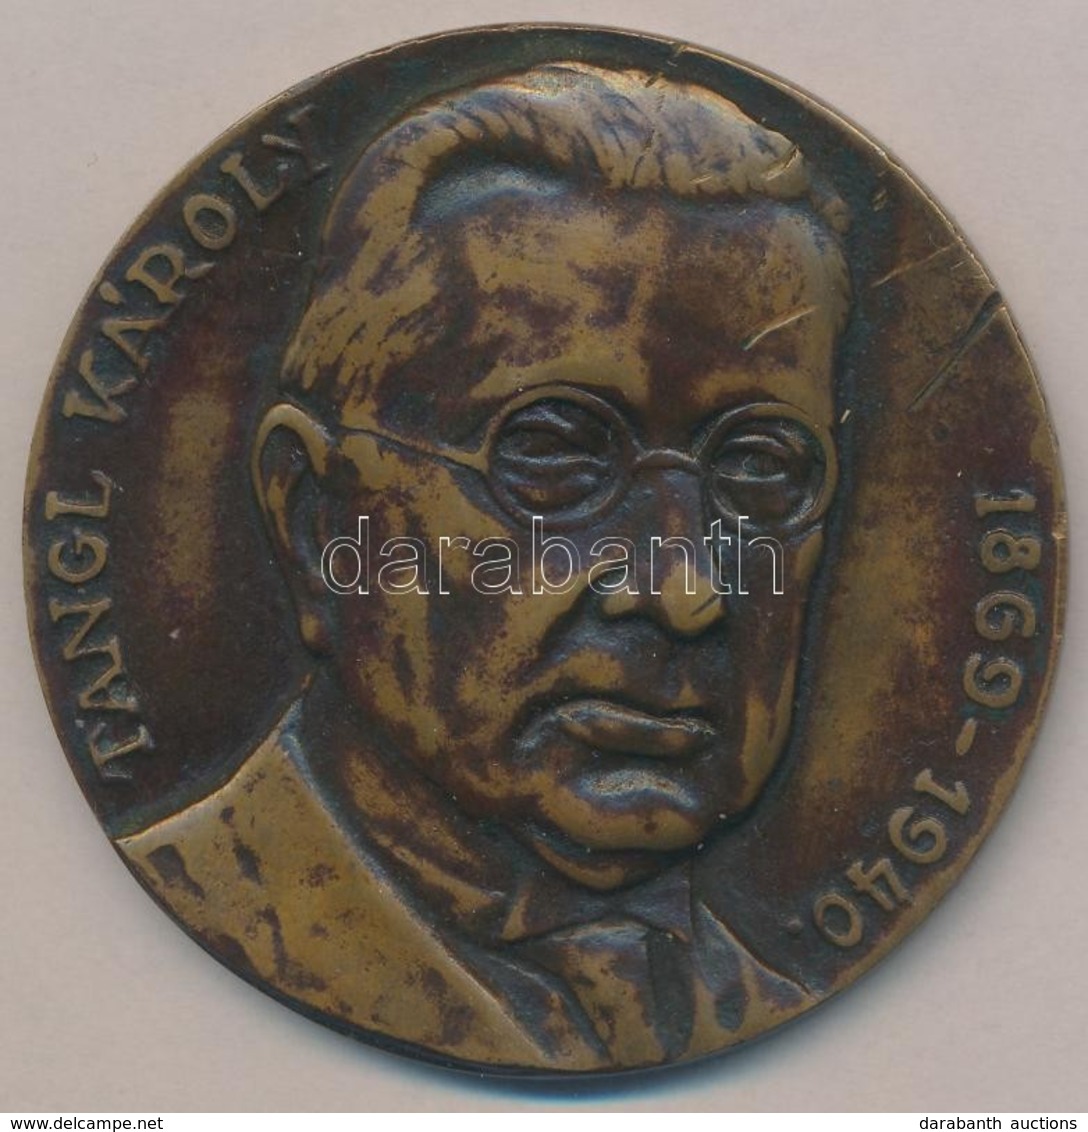 Pátzay Pál (1896-1979) ~1940. 'Tangl Károly' Br Emlékérem (70mm) T:2- K.,ph. - Non Classificati